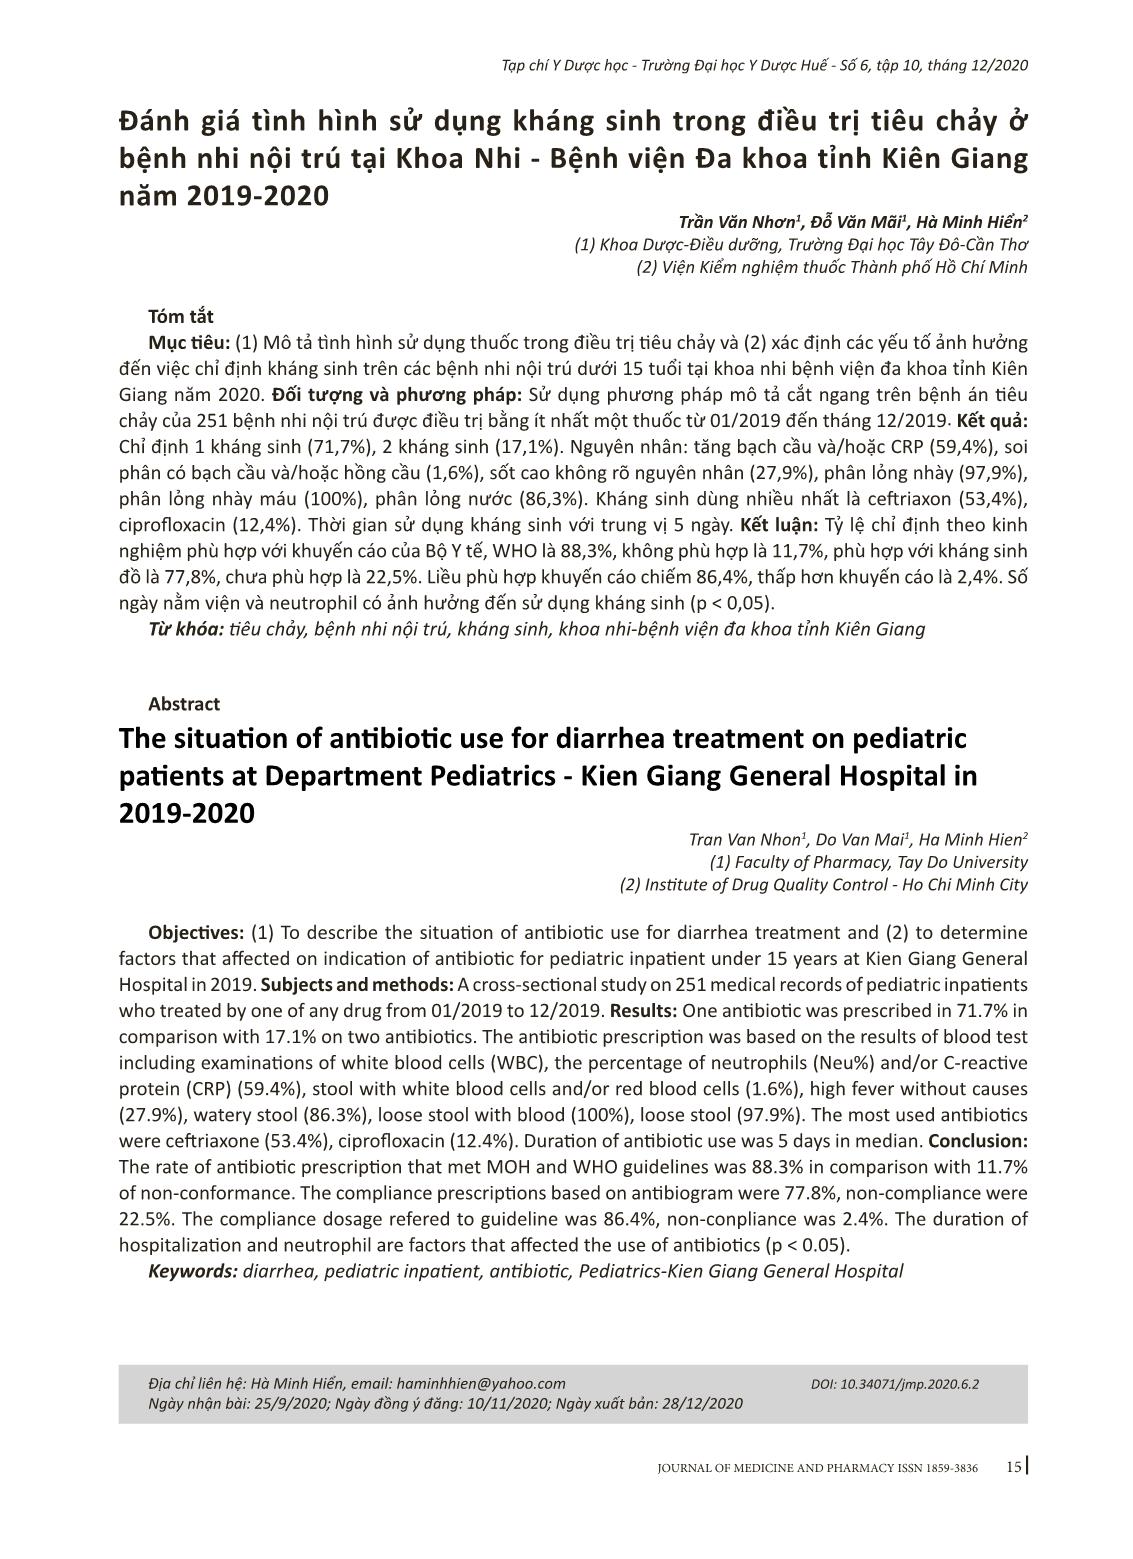 Đánh giá tình hình sử dụng kháng sinh trong điều trị tiêu chảy ở bệnh nhi nội trú tại Khoa Nhi - Bệnh viện Đa khoa tỉnh Kiên Giang năm 2019-2020 trang 1